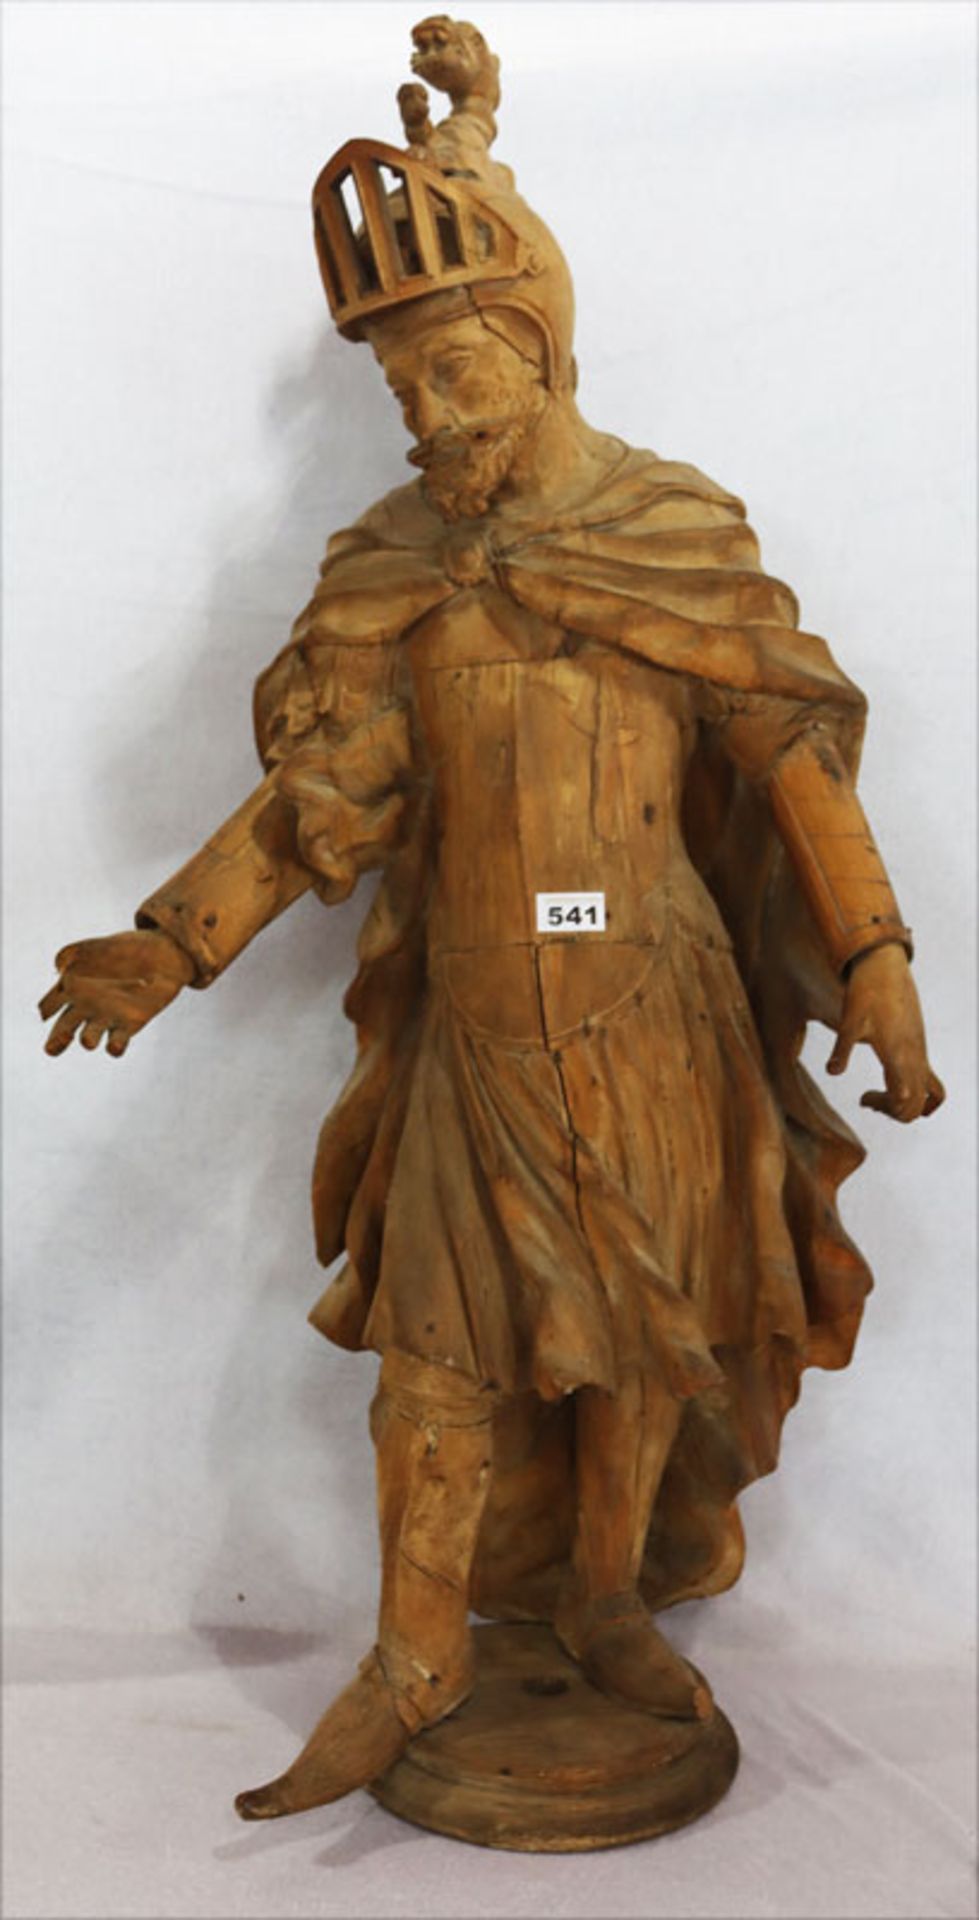 Holz Figurenskulptur 'St. Georg', um 1800, ungefaßt, nicht komplett, Trocknungsrisse, teils fehlen